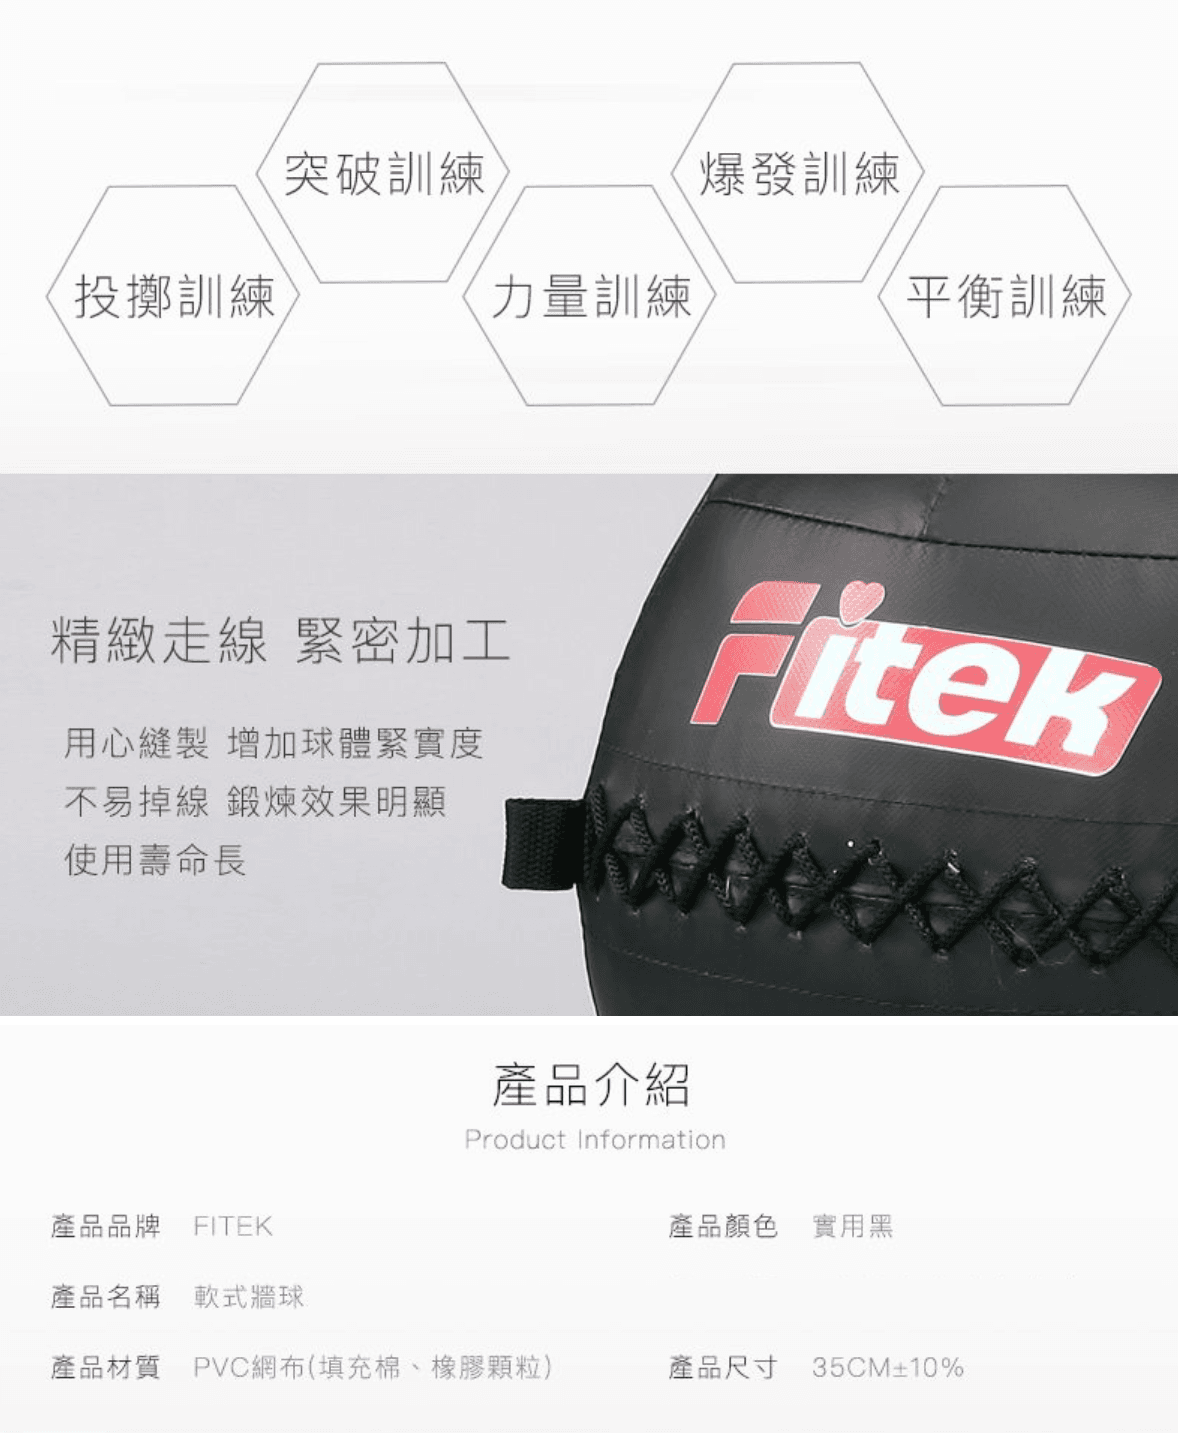 軟式藥球牆球10KG【Fitek】 4